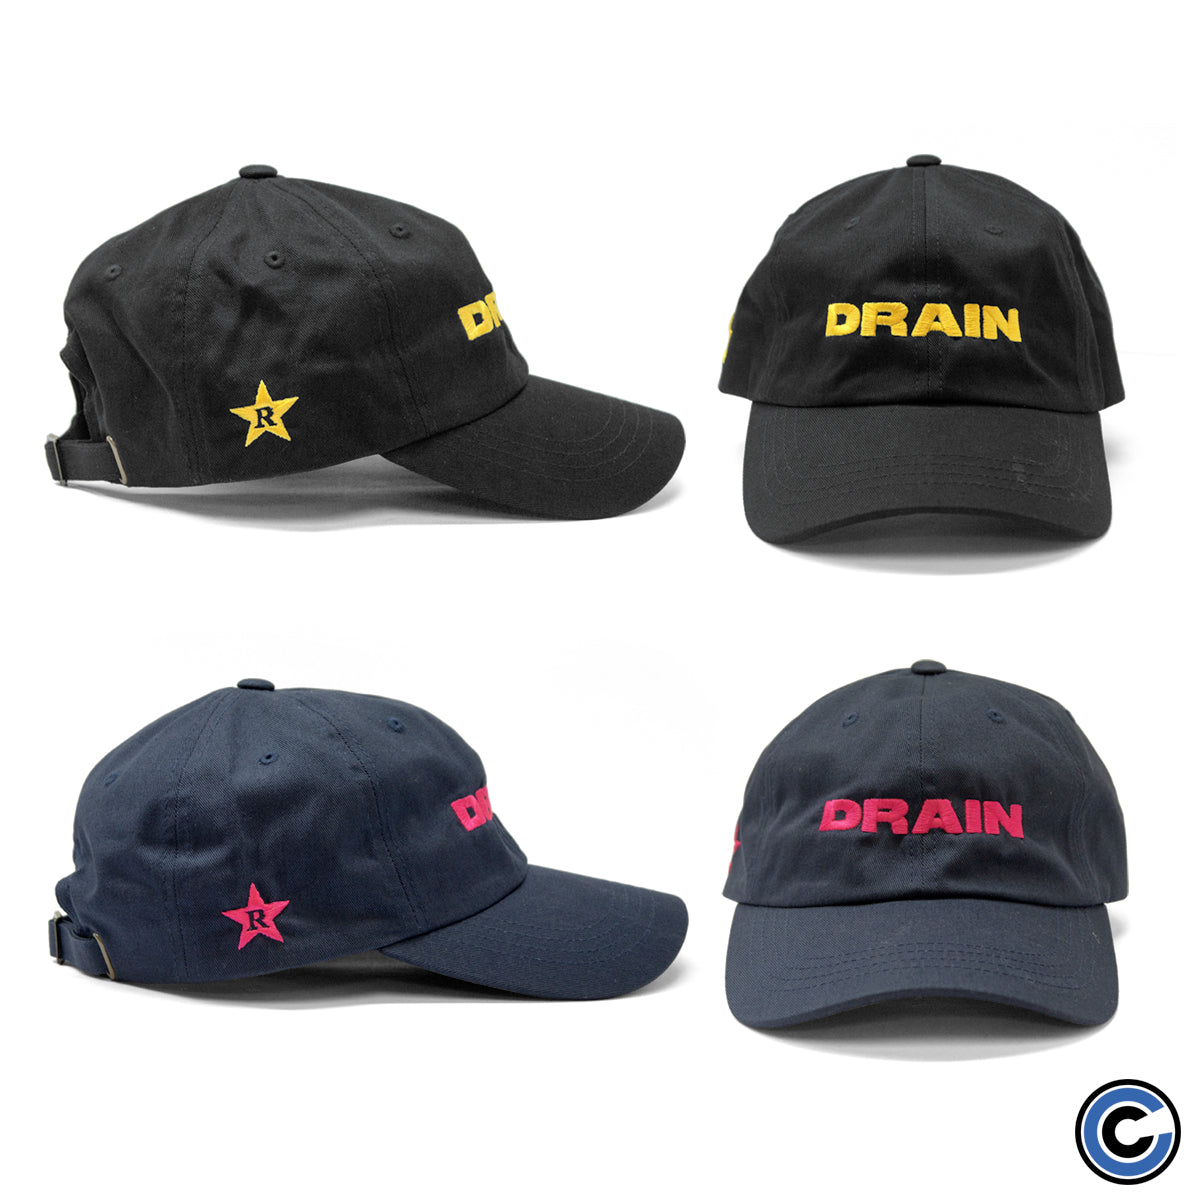 Drain "Logo" Hat